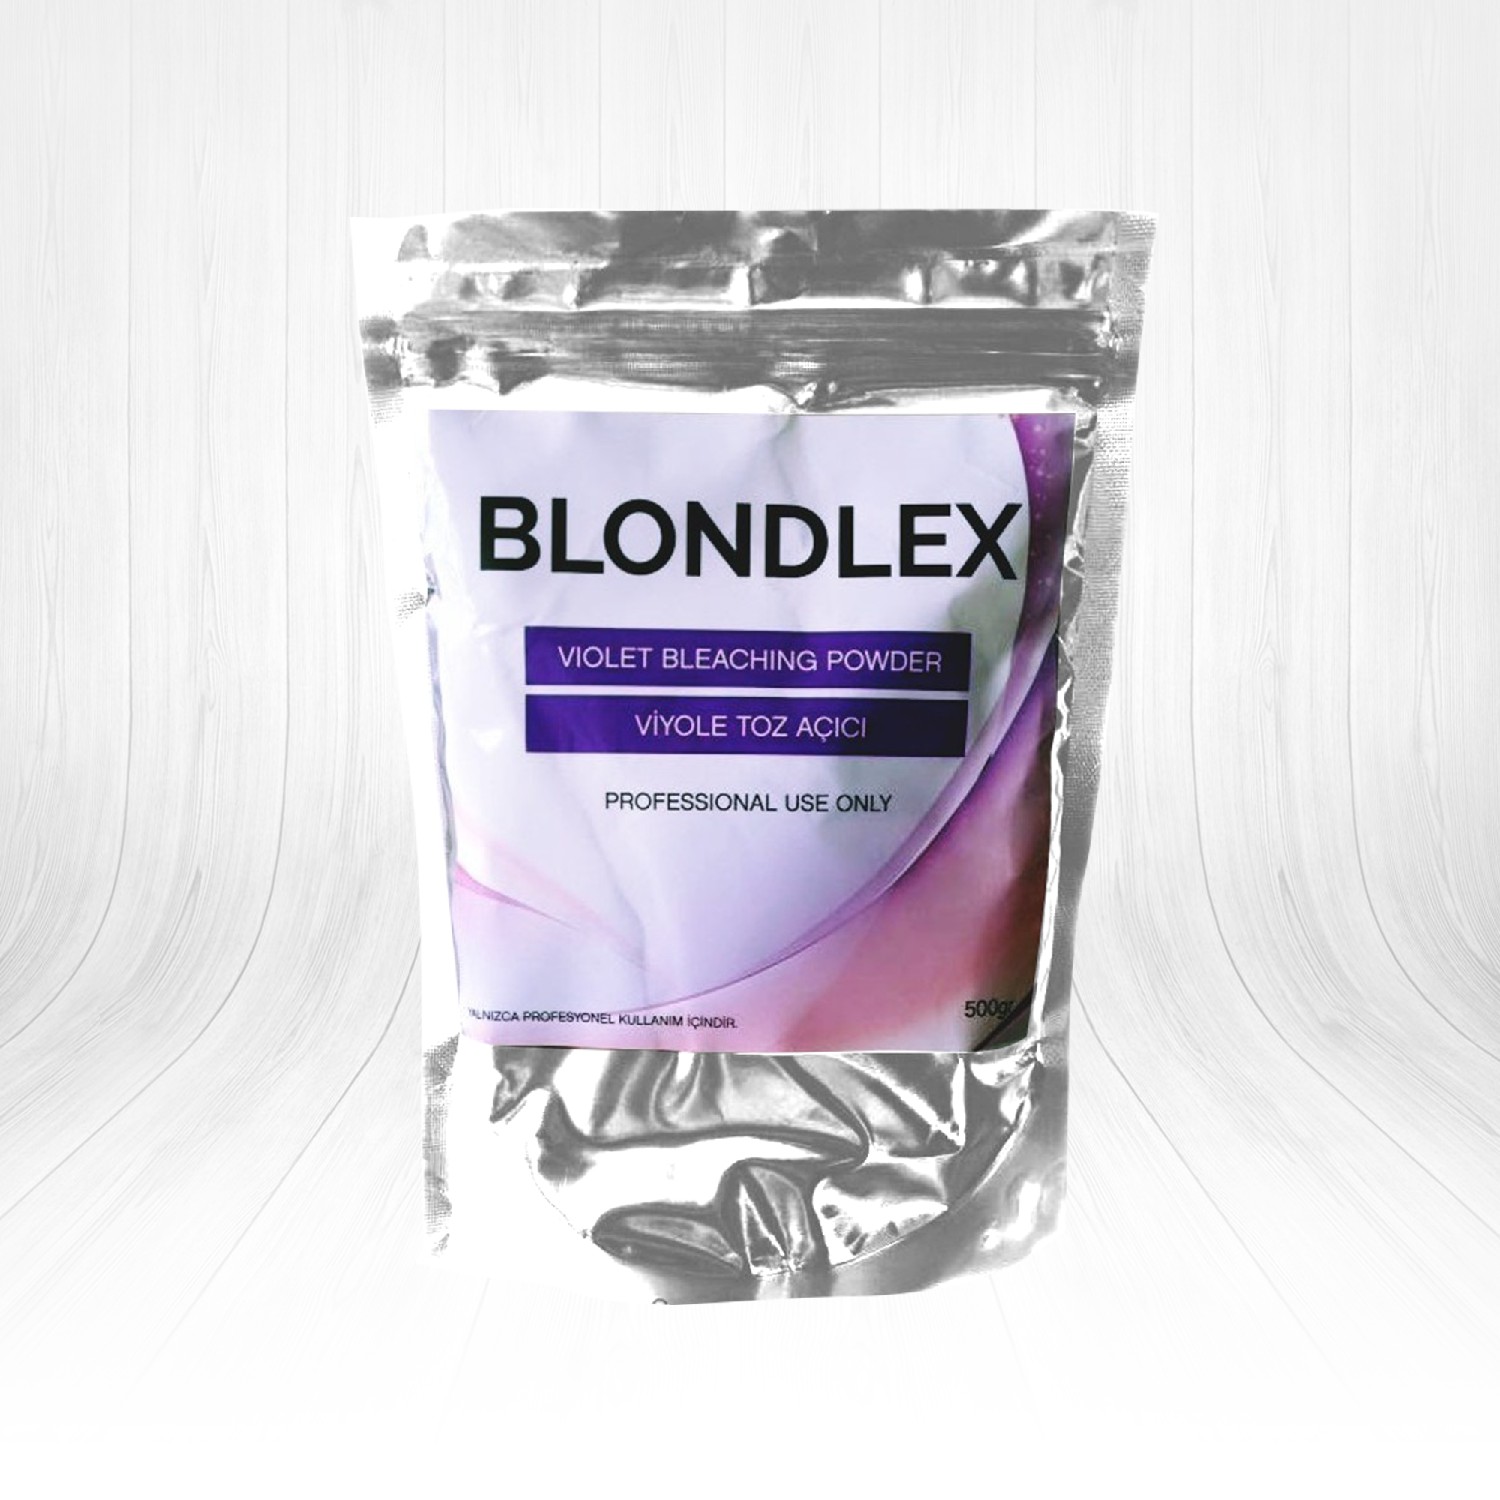 Blondlex Viyole Toz Açıcı